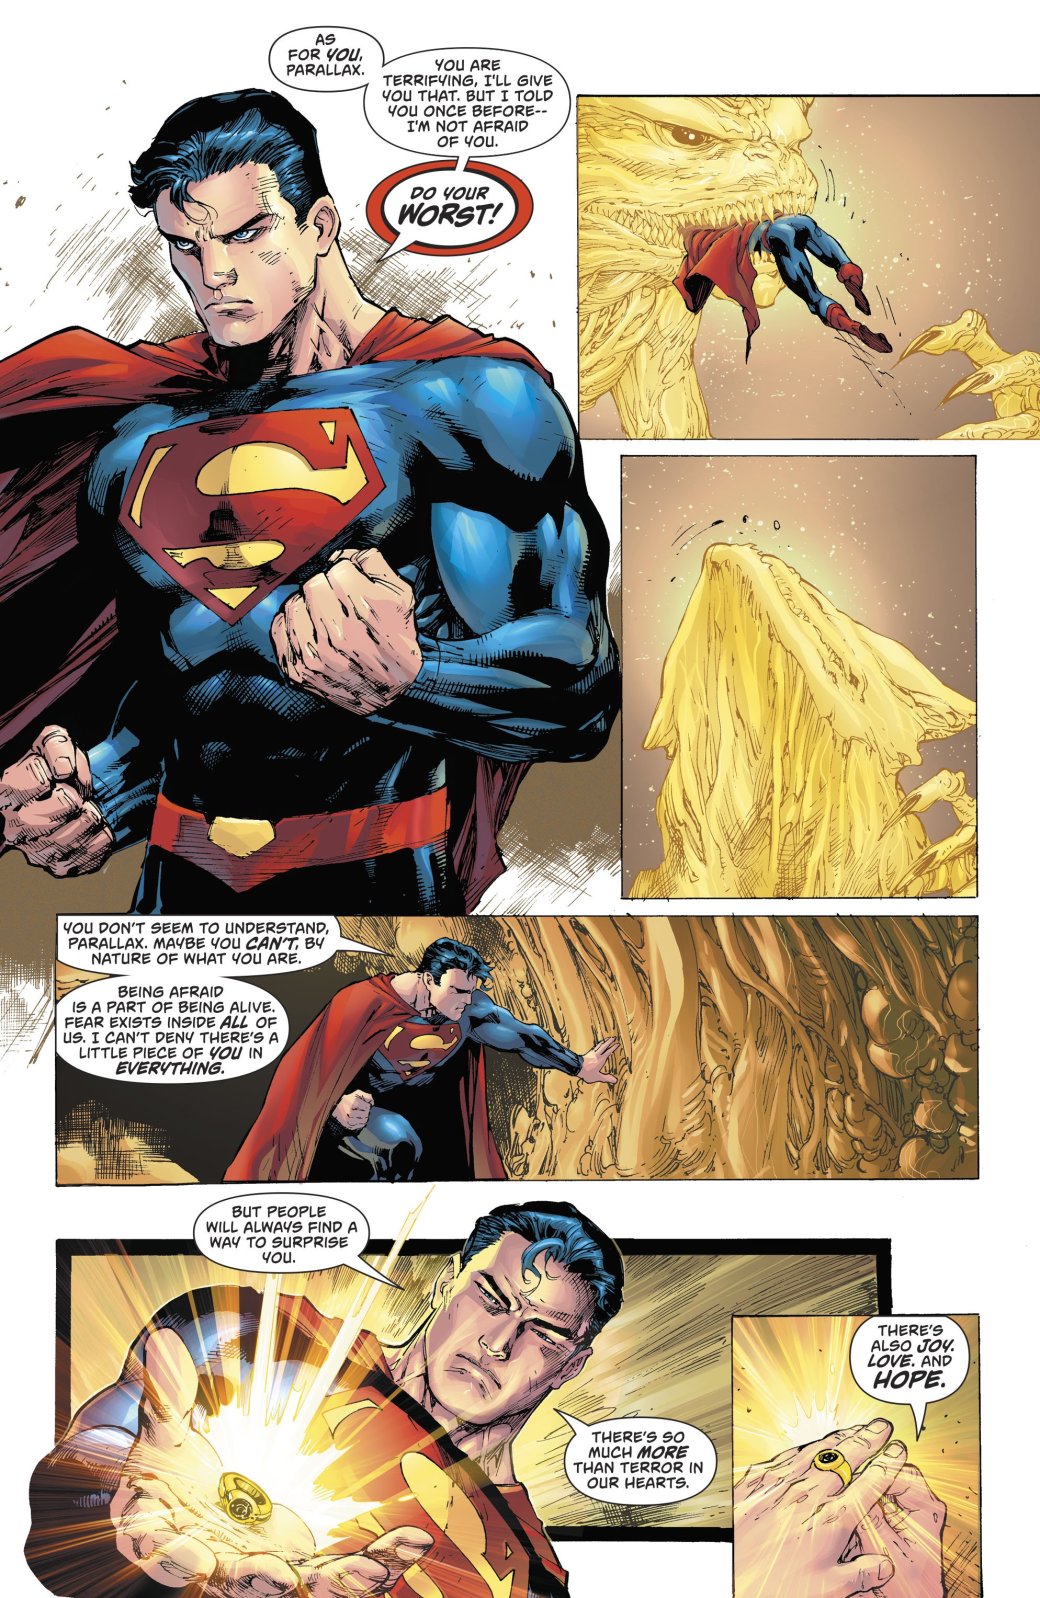 Чего боится Супермен? DC представило главные страхи Кларка Кента. - Изображение 3